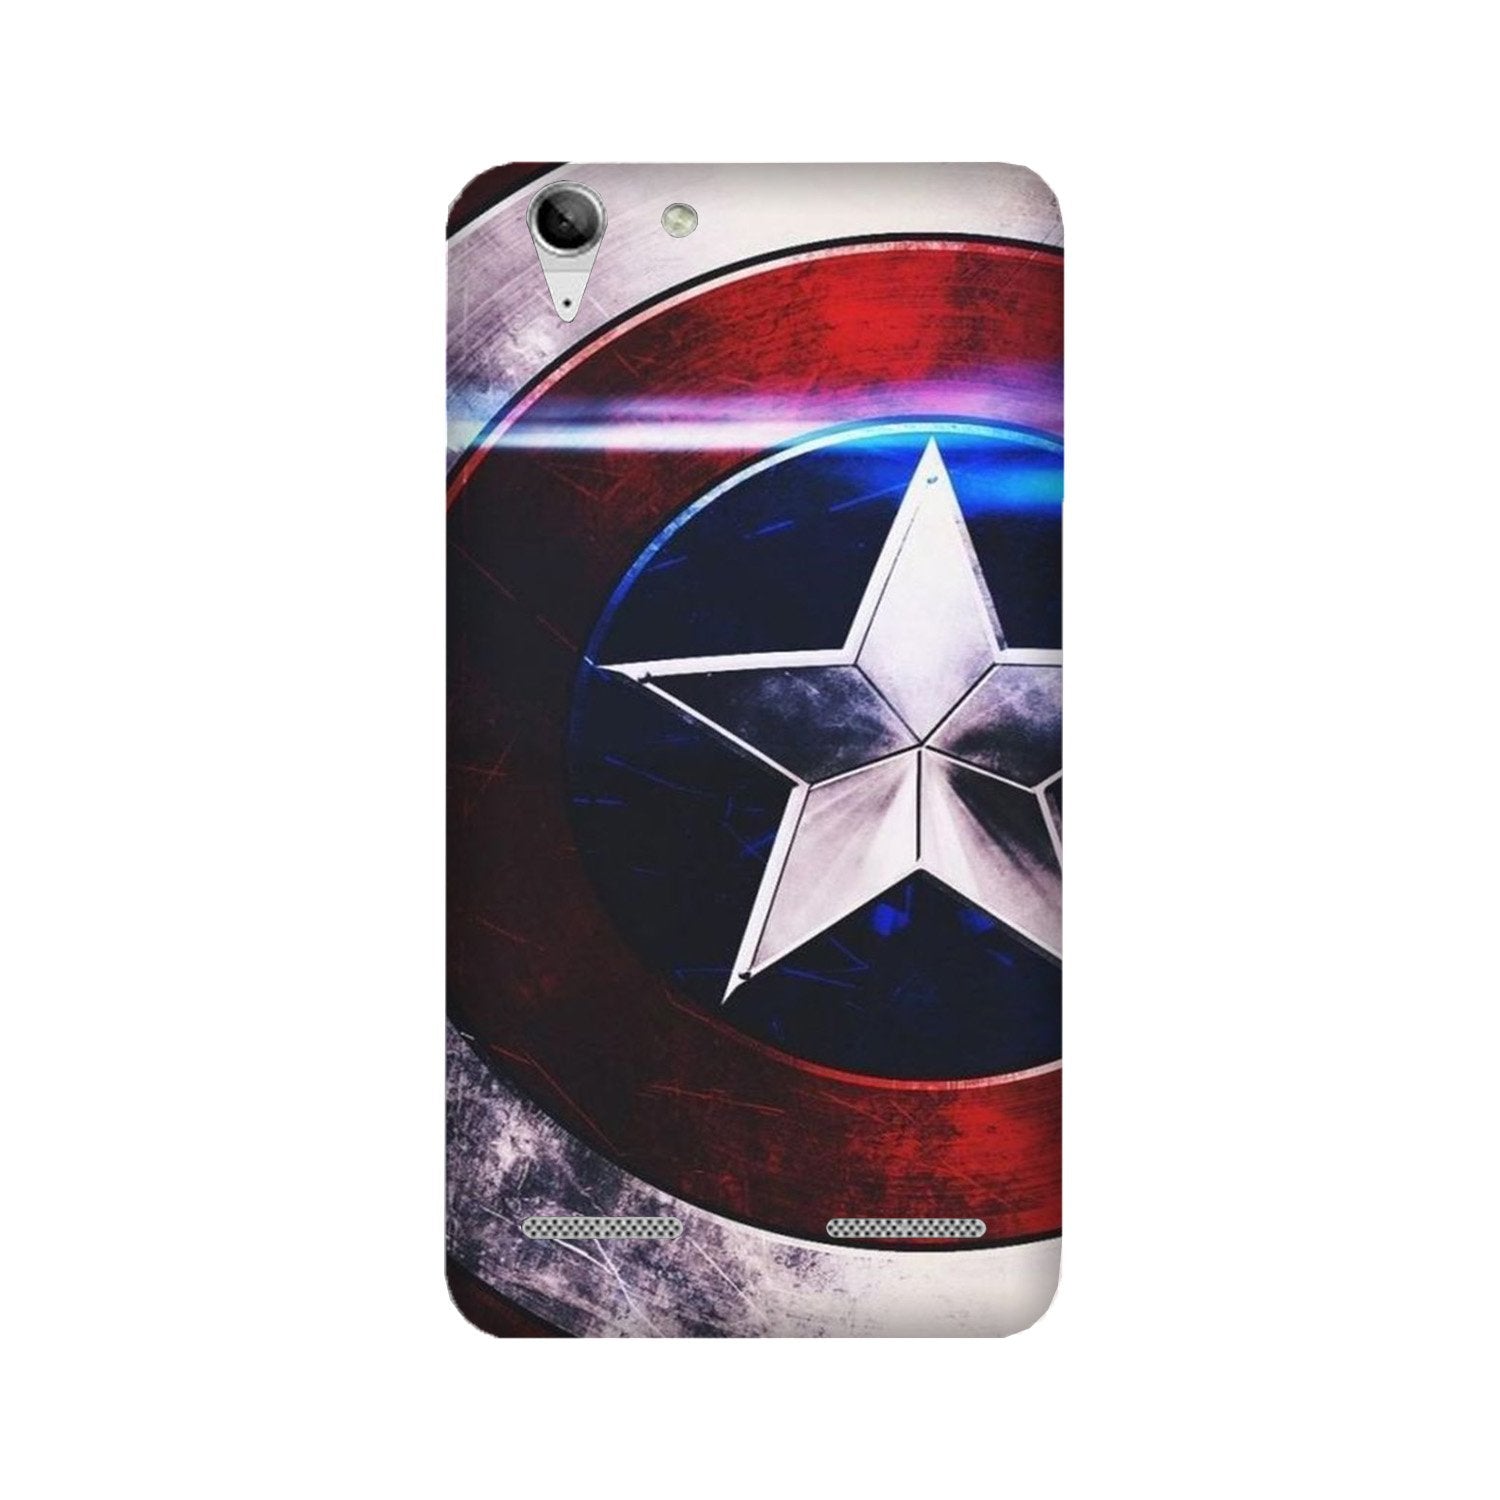 Captain America Shield Case for Lenovo K5 / K5 Plus (Design No. 250)